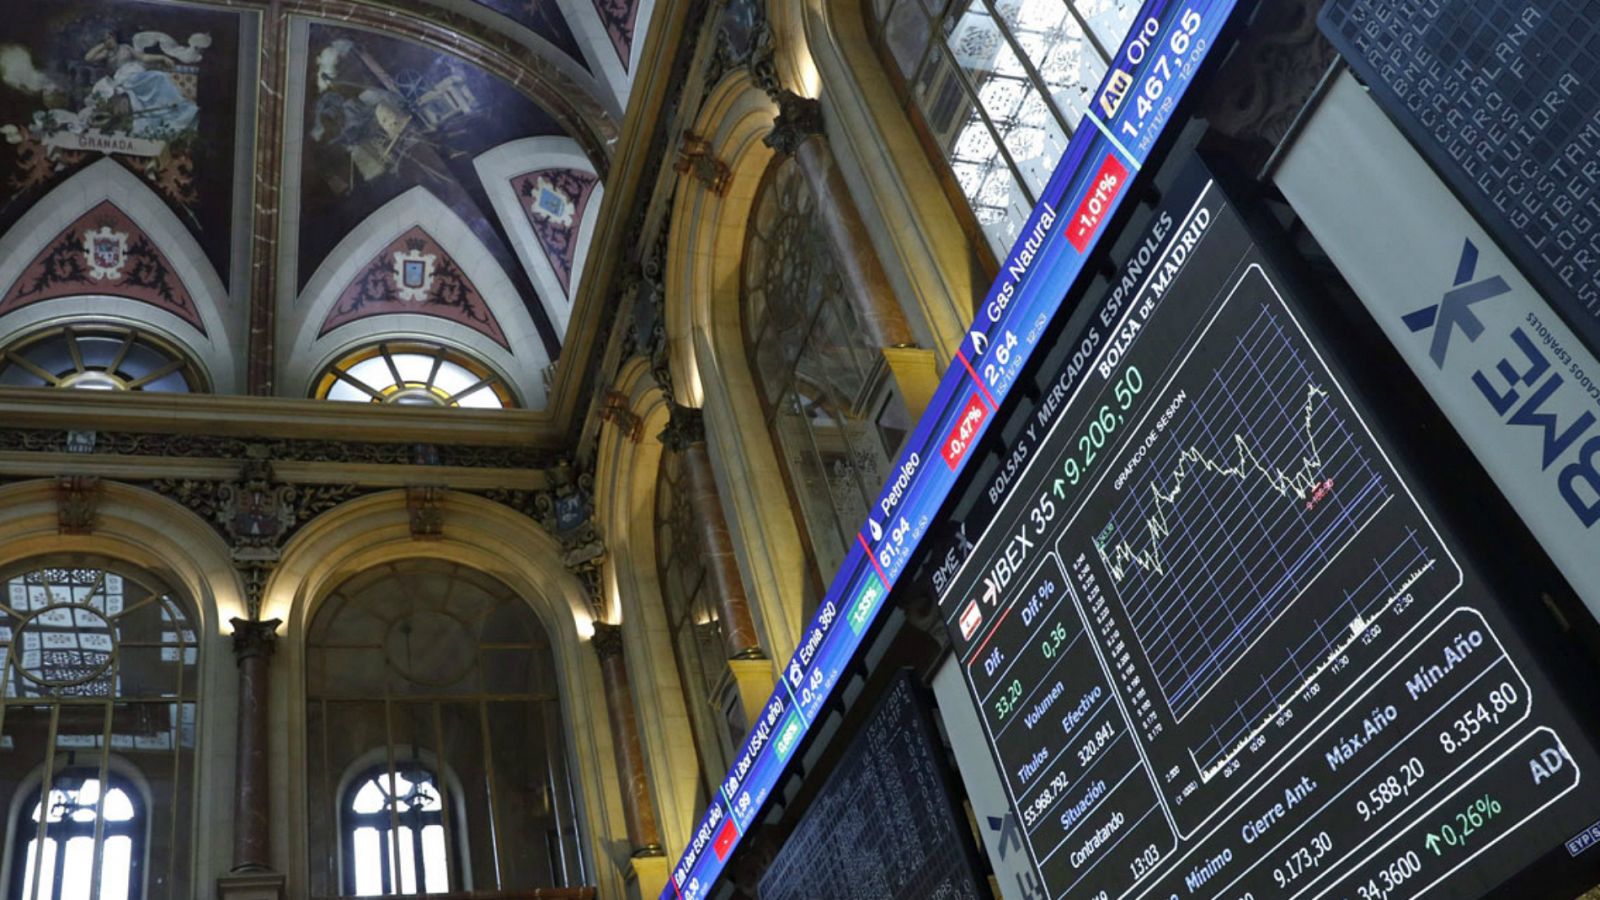 Opa Suiza | La Bolsa suiza lanza una opa sobre Bosas y Mercados Españoles - RTVE.es